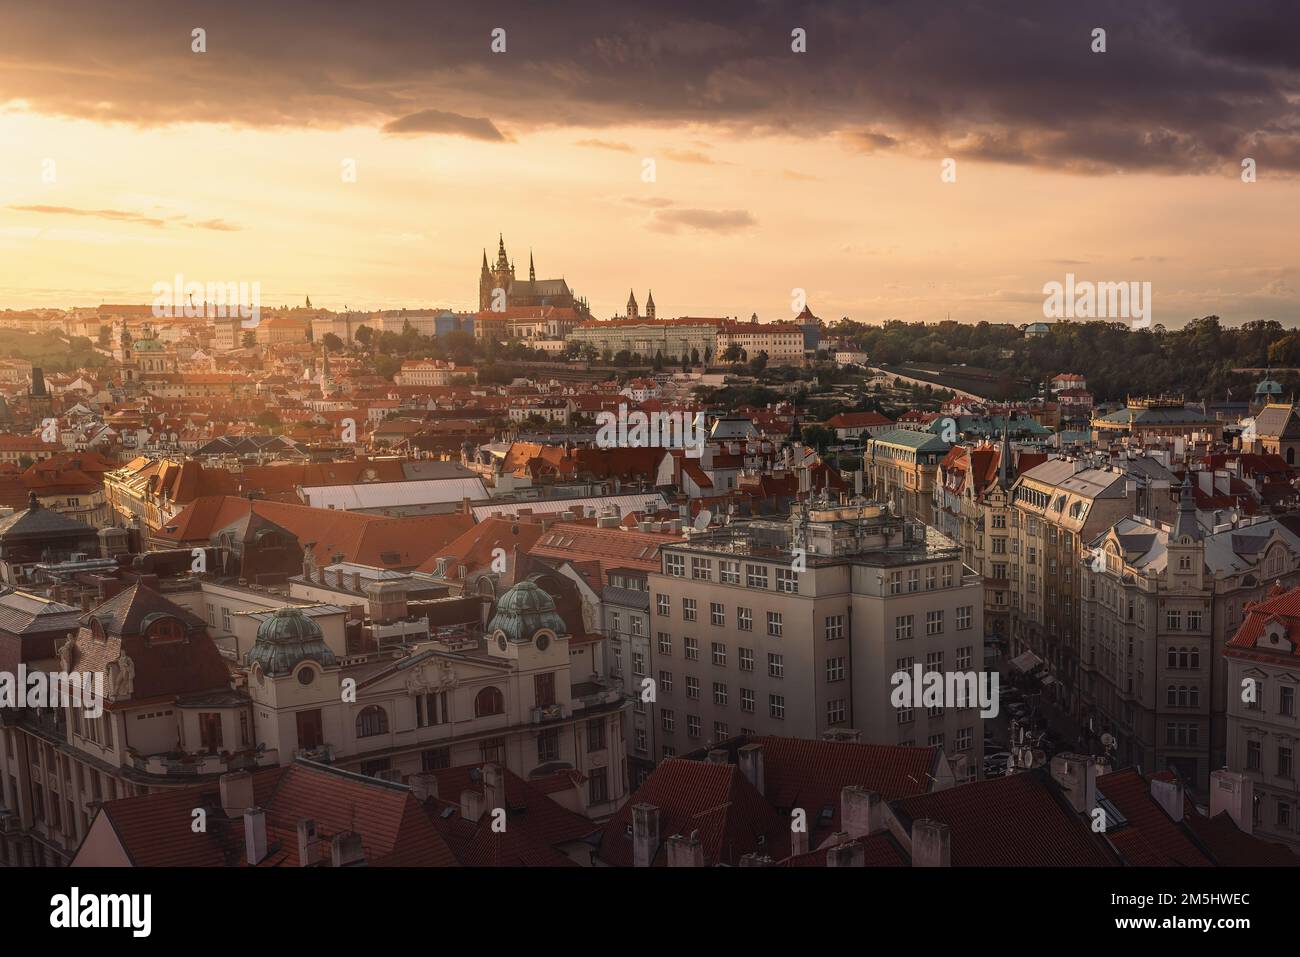 Blick auf Prag bei Sonnenuntergang mit der Prager Burg - Prag, Tschechische Republik Stockfoto